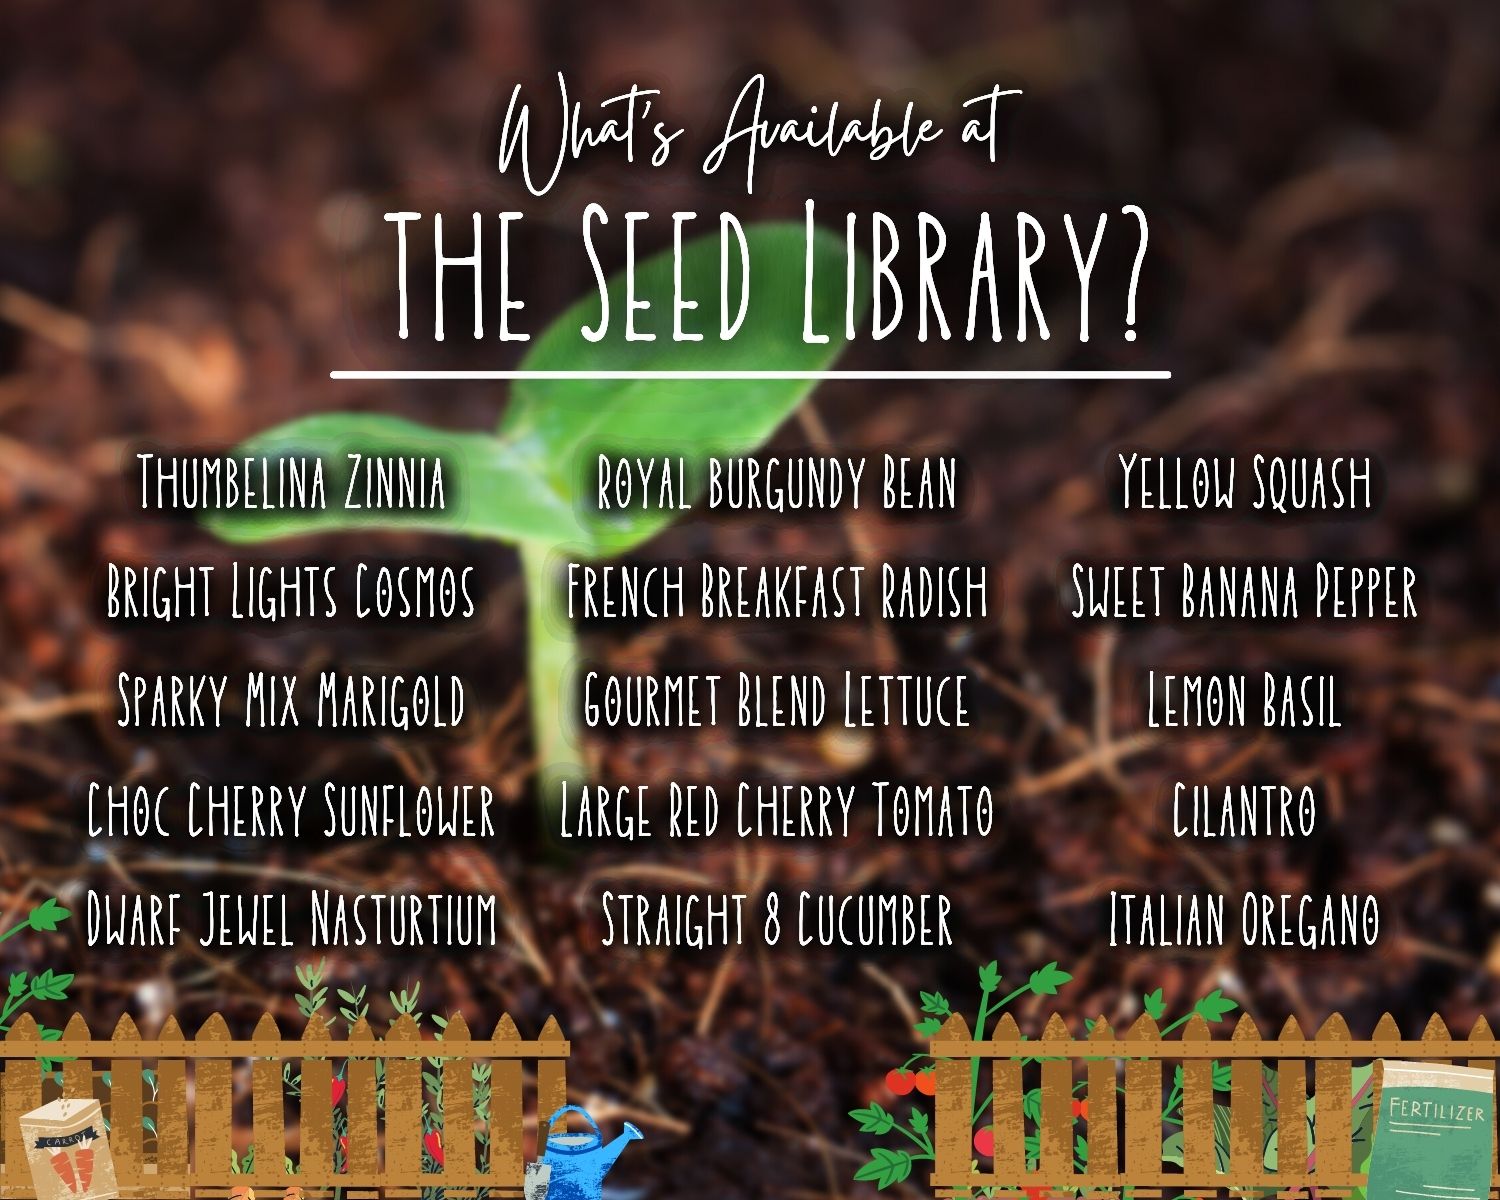 List of Seeds